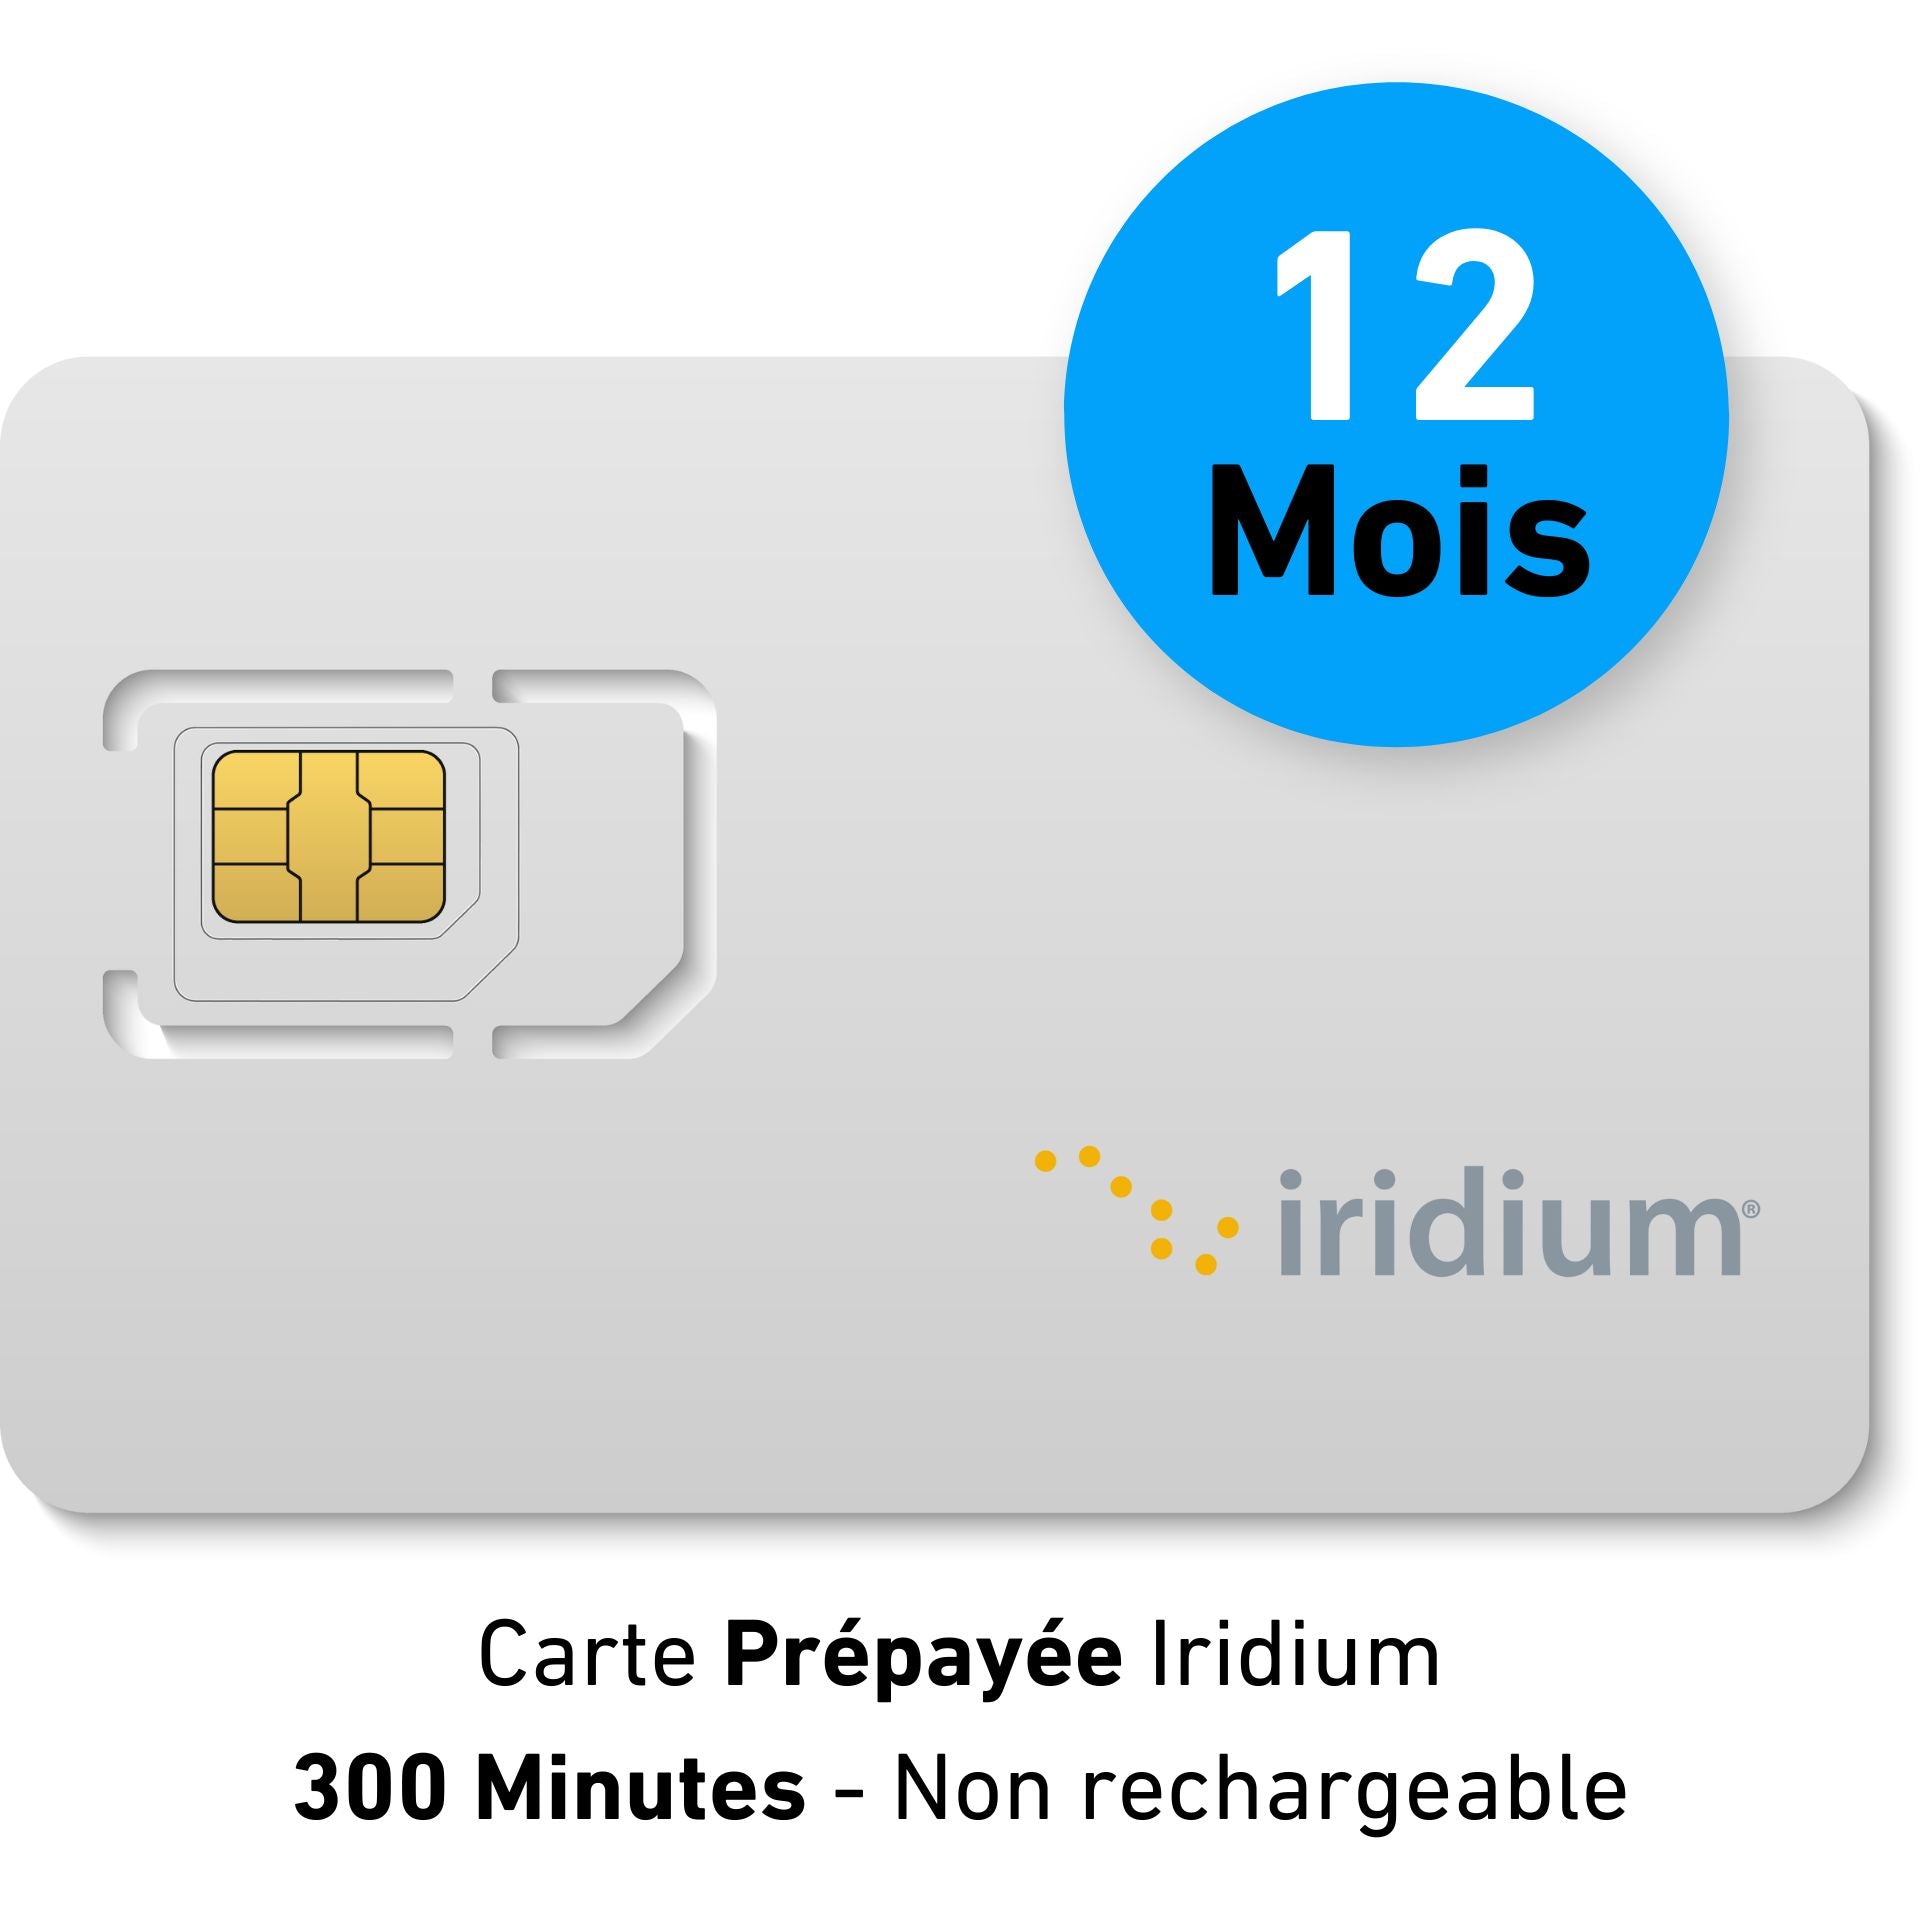 Vorausbezahlte, nicht aufladbare Karte - IRIDIUM - 300 min - 12 MONATE